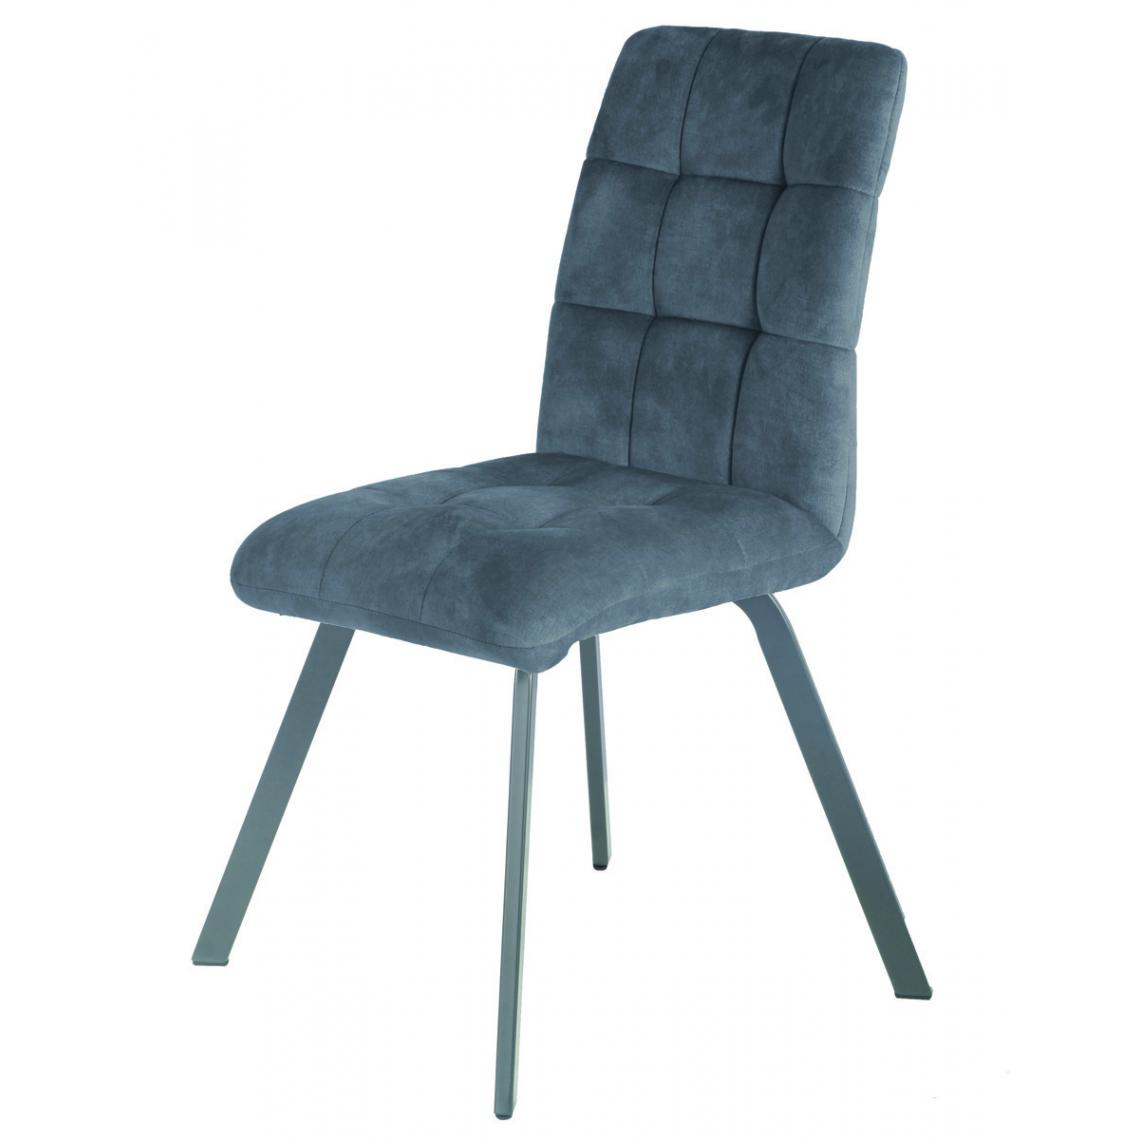 Pegane - Lot de 2 chaises en tissu / métal coloris gris - Longueur 45 x Profondeur 62 x hauteur 89 x hauteur assise 48 cm - Chaises